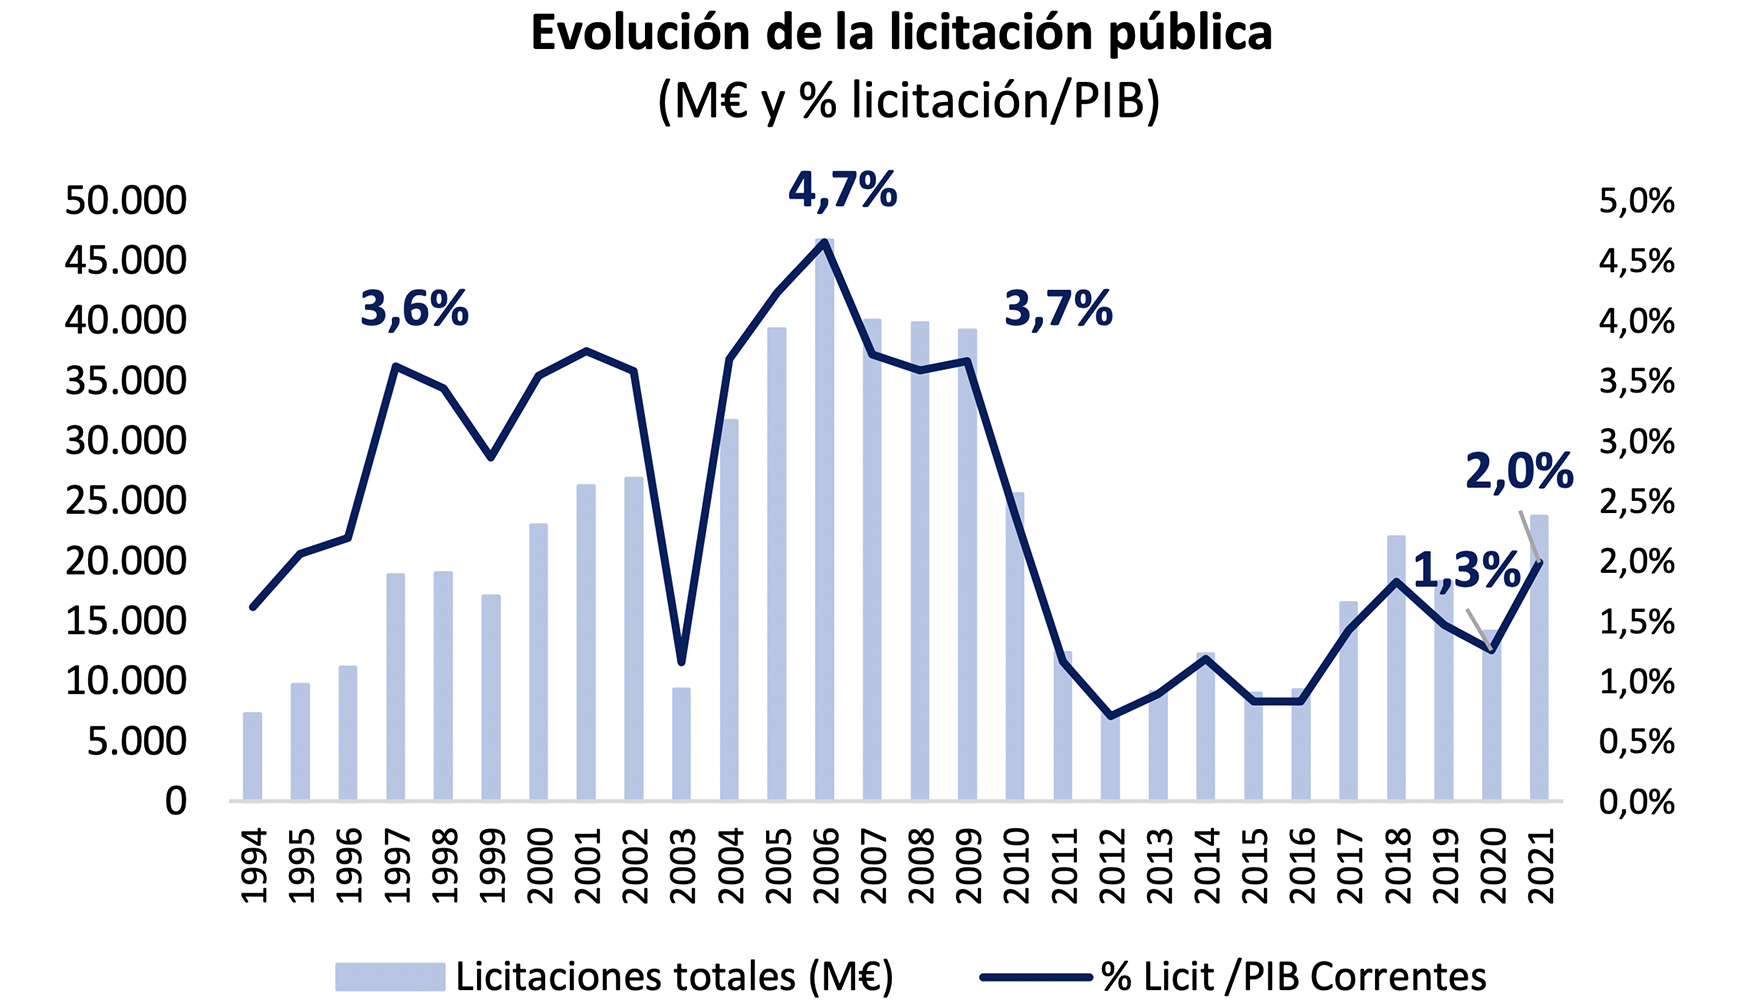 Evolucin de la licitacin pblica en Espaa en el periodo 1994-2021. Fuente: Seopan